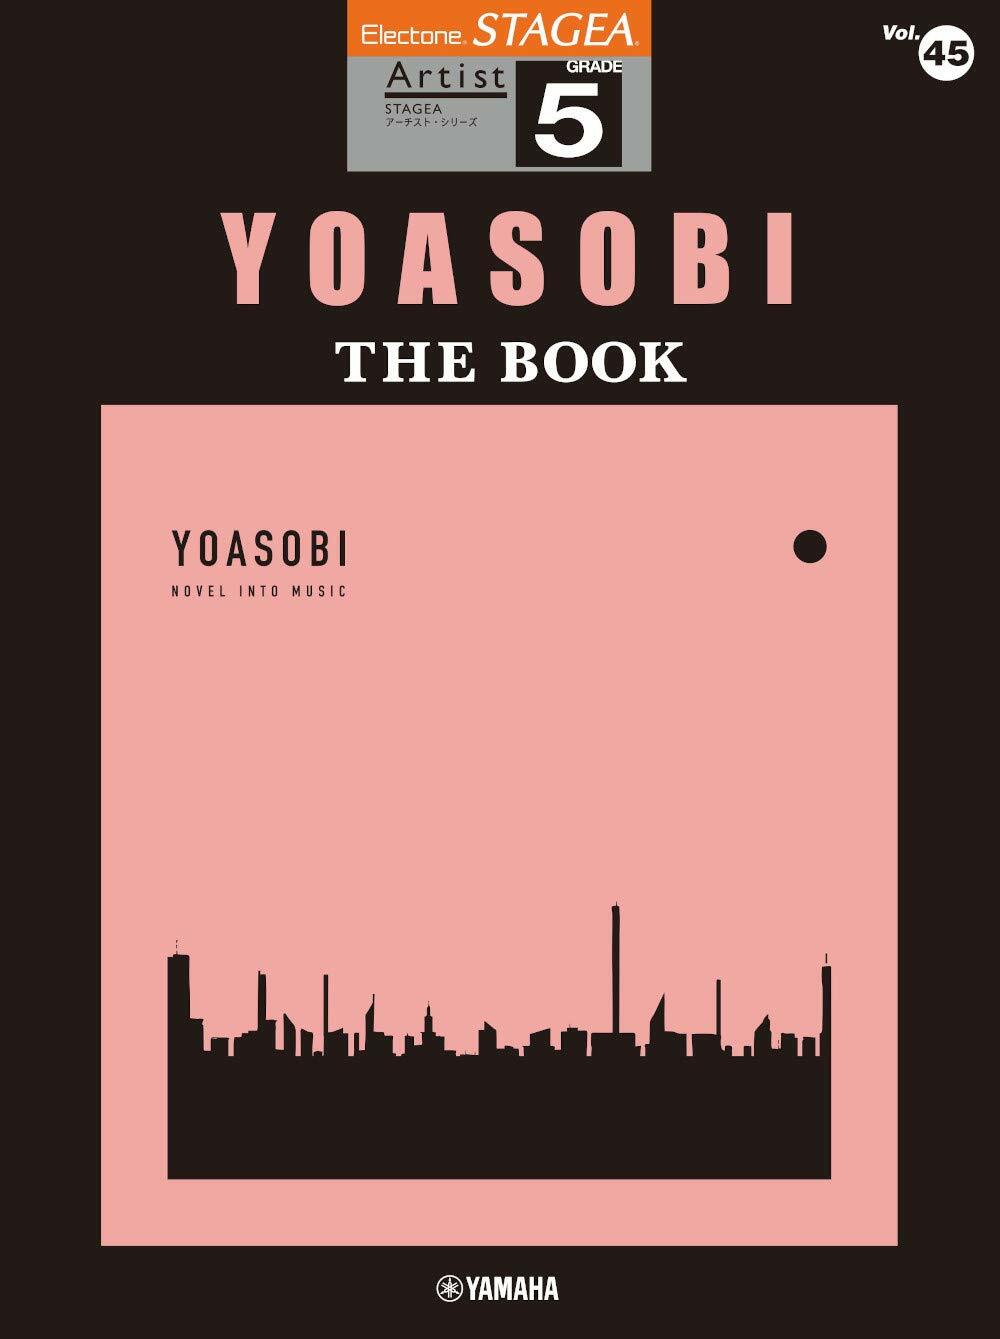 STAGEA ア-チスト 5級 Vol.45 YOASOBI 『THE BOOK』 (樂譜)